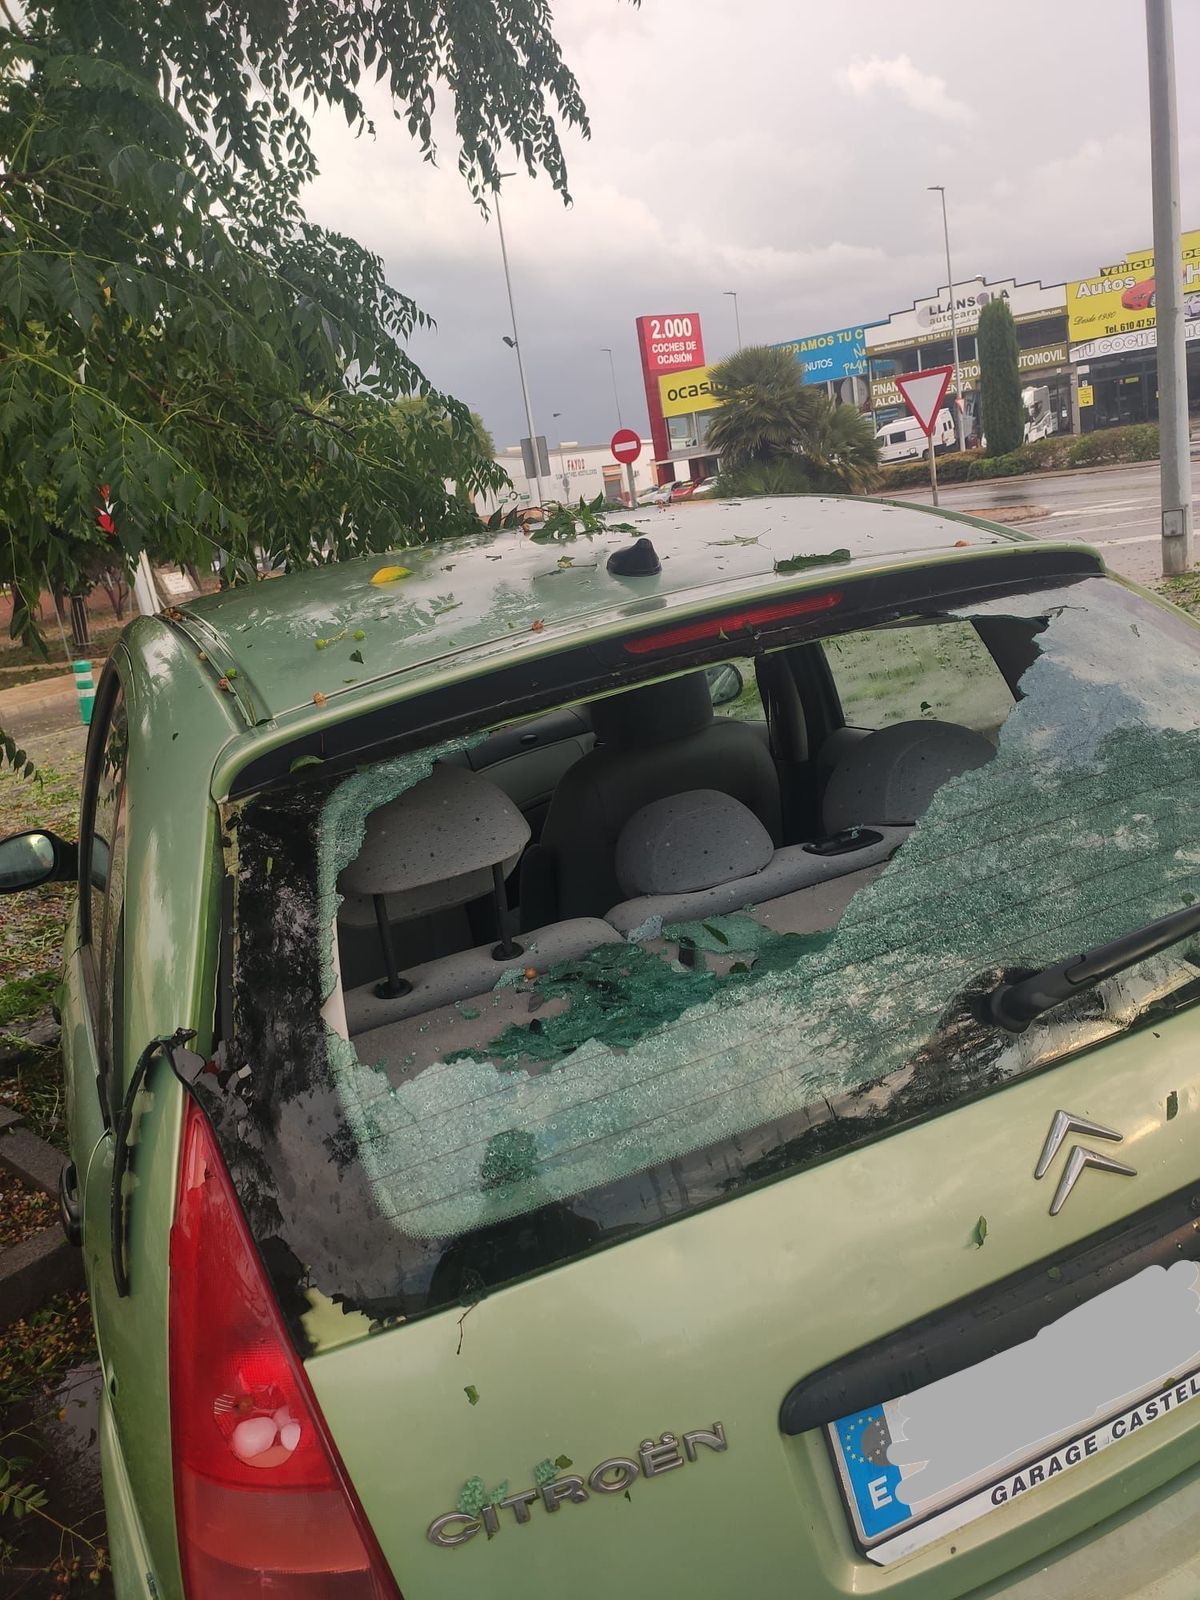 Centenares de vehículos de toda la provincia sufrieron durante la intensa granizada de ayer daños en sus lunas y cristales